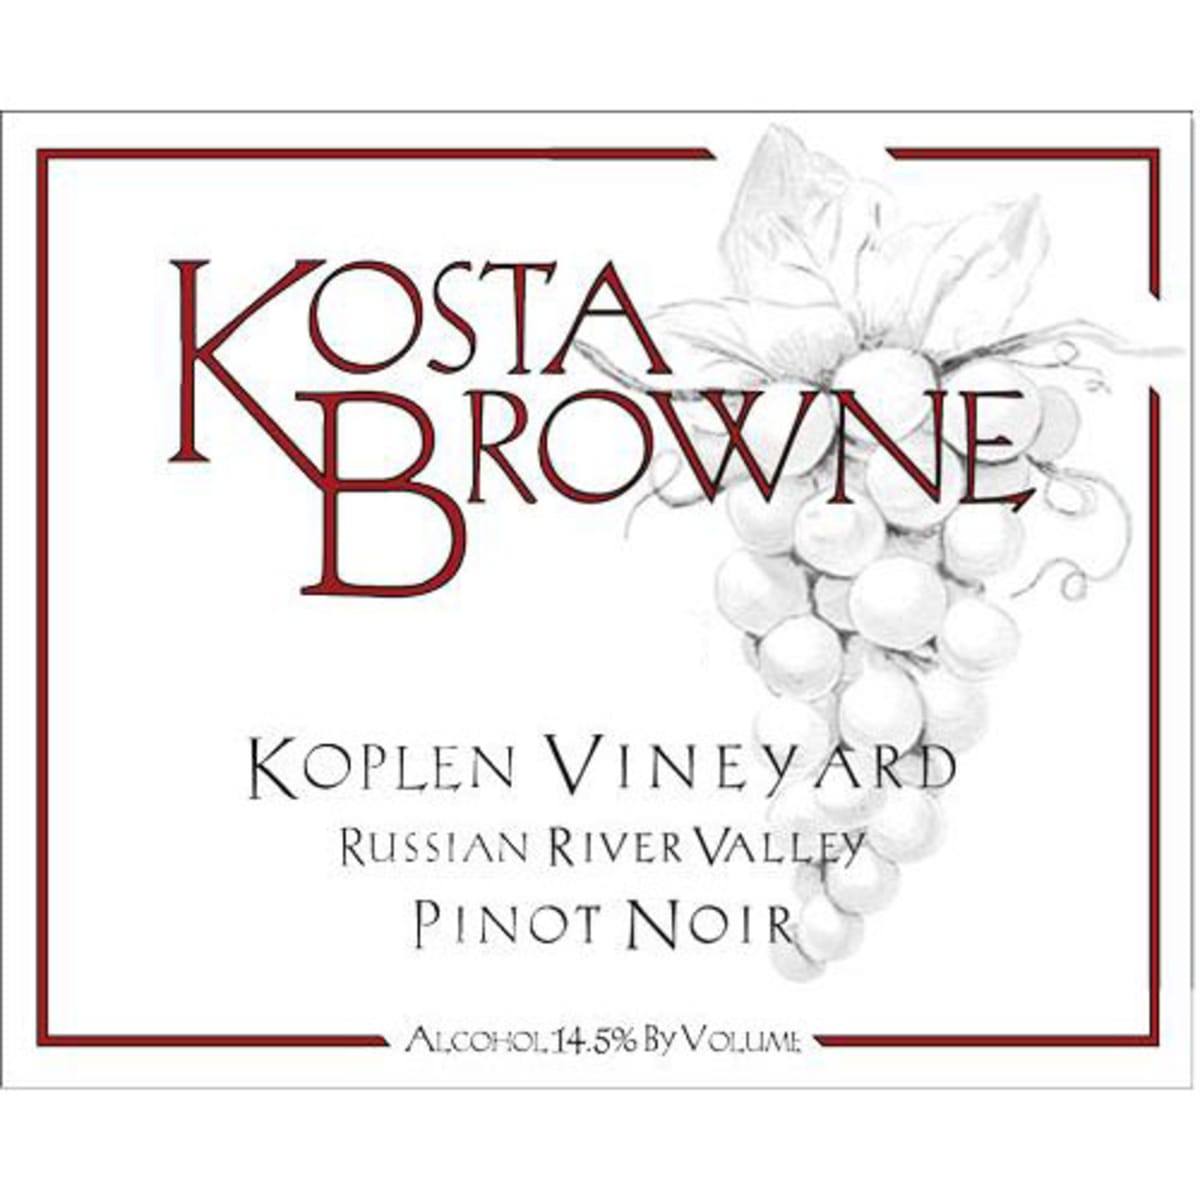 Kosta Browne Koplen Vineyard Pinot Noir 2004 Front Label